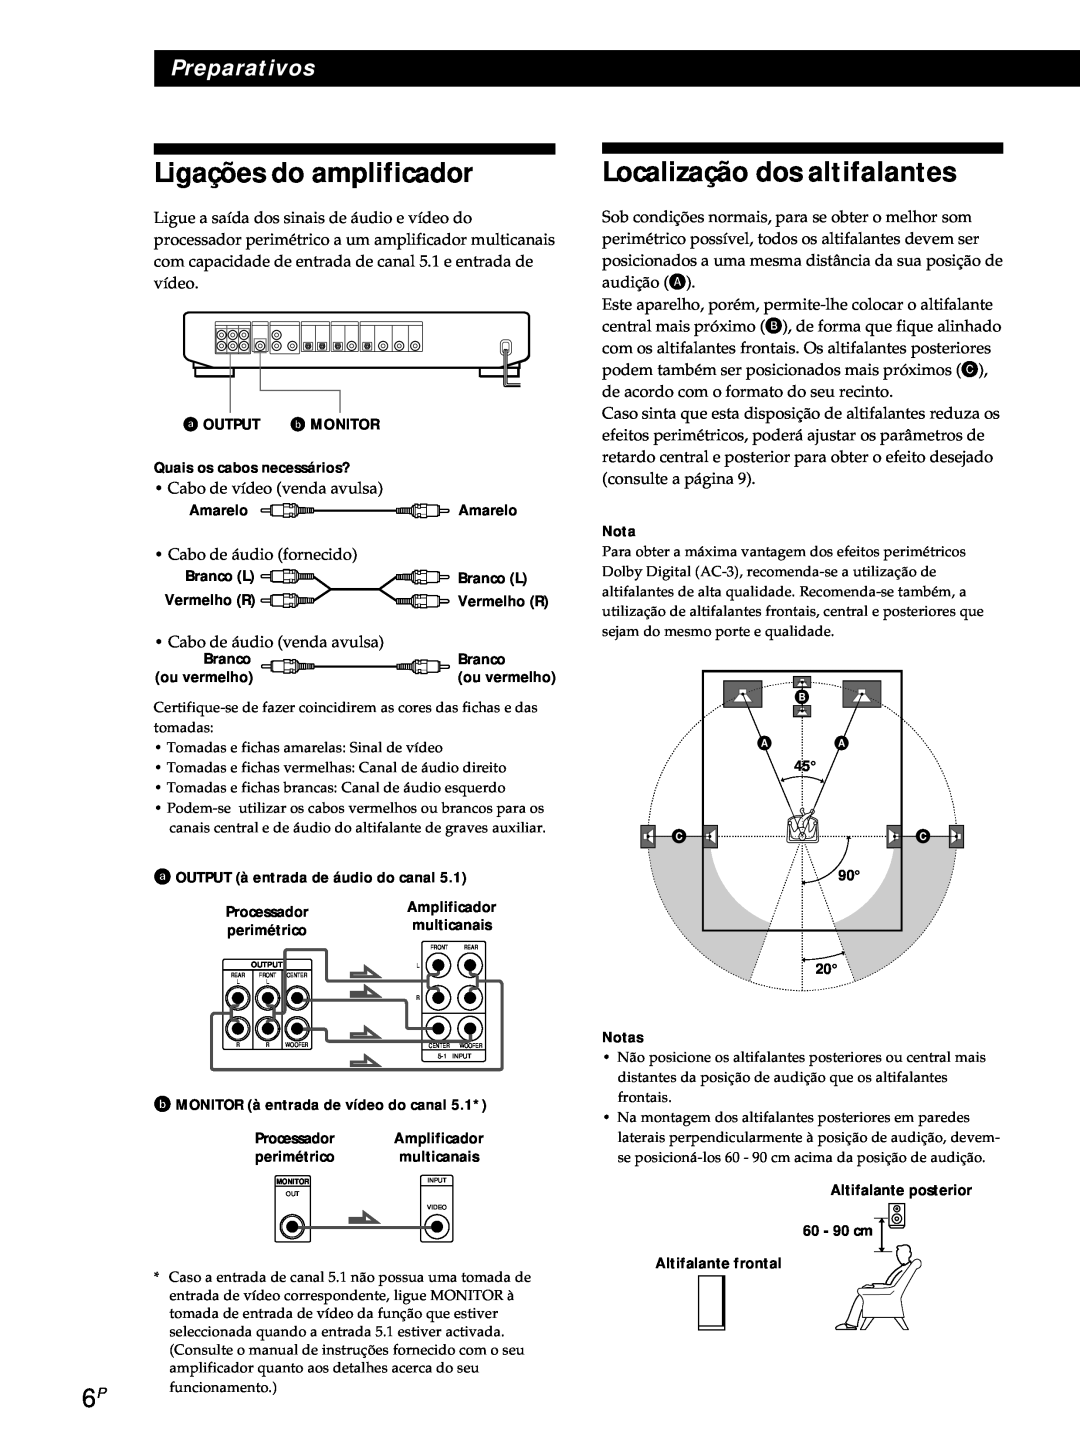 Sony SDP-E800 Ligações do amplificador, Localização dos altifalantes, Preparativos, Quais os cabos necessários?, Nota 